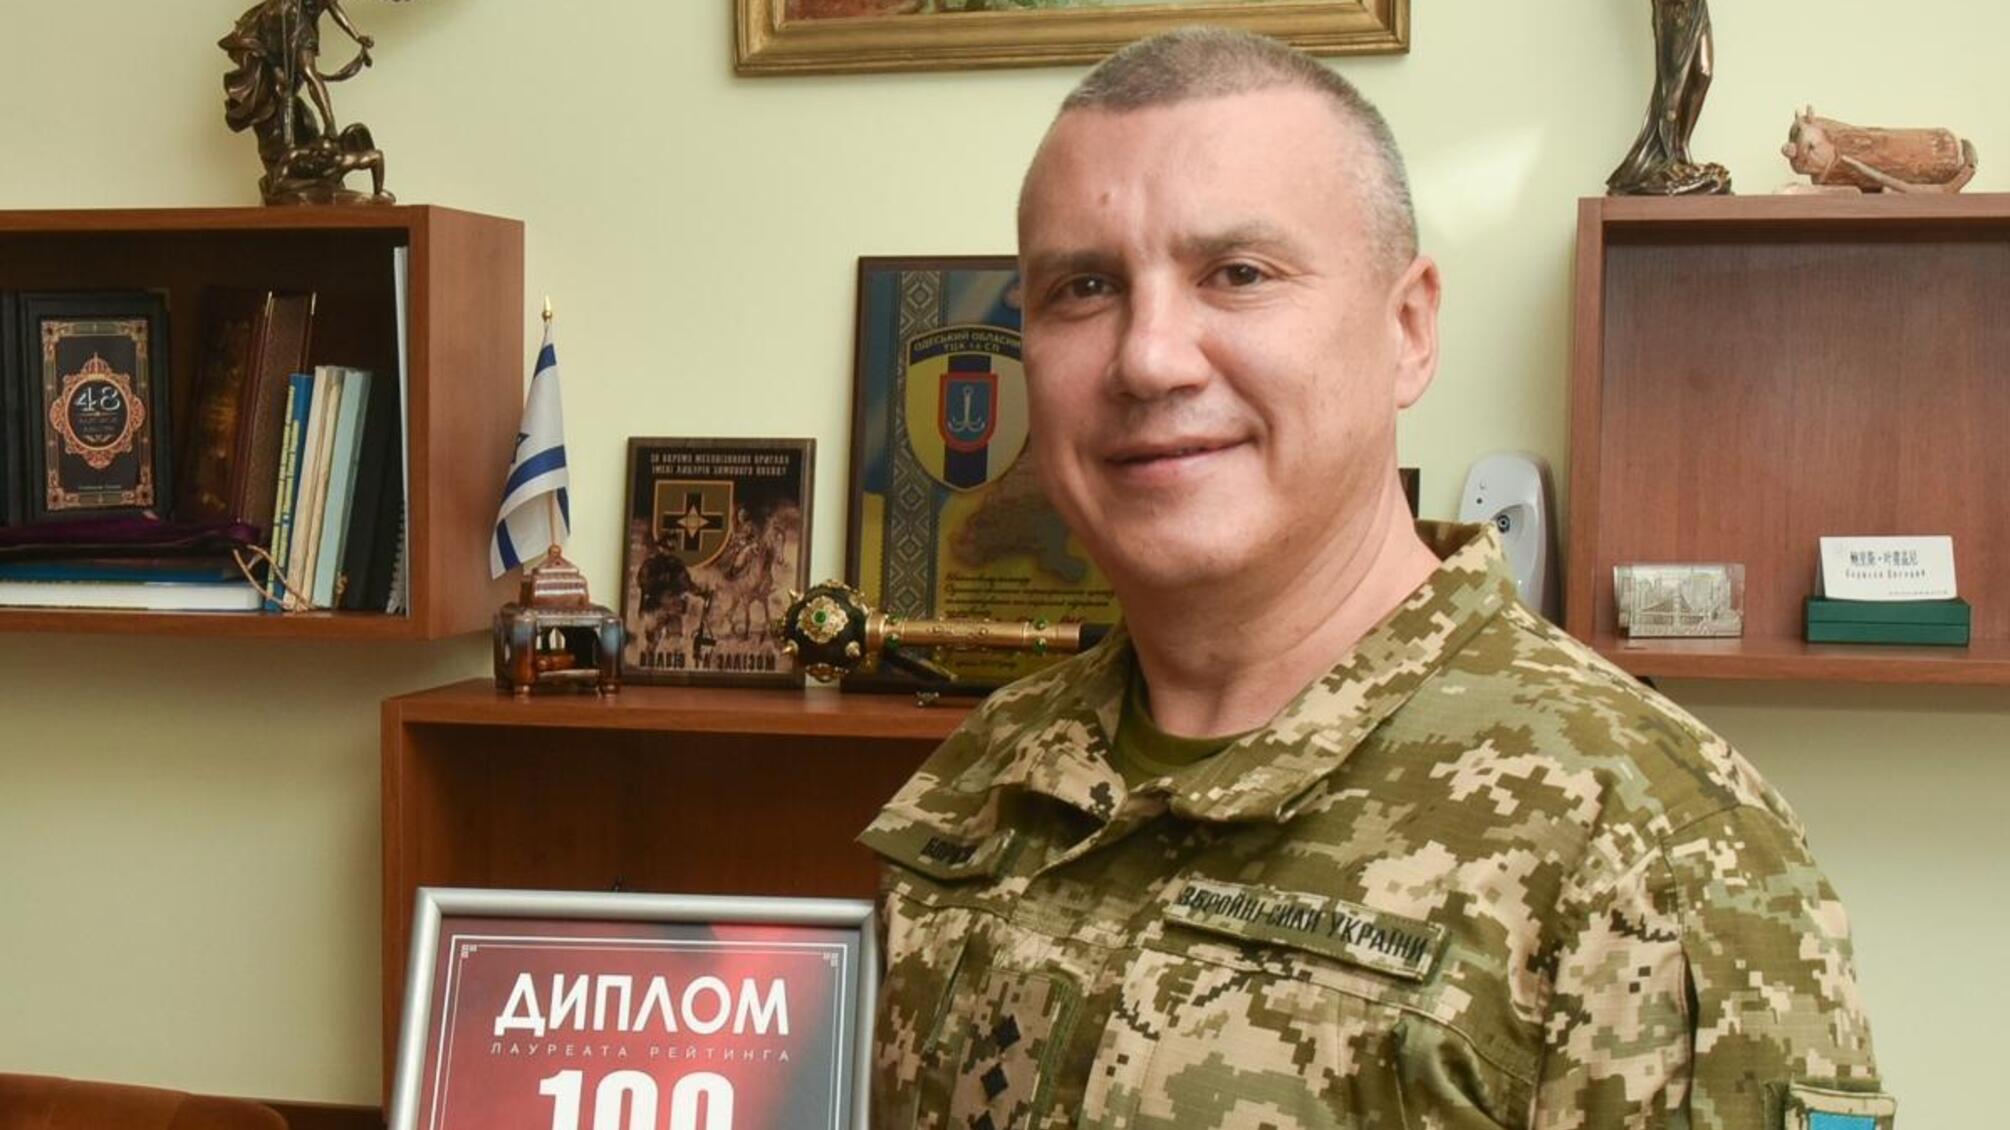 Одіозному одеському ексвоєнкому Борисову оголосили підозру, а той...зник: деталі